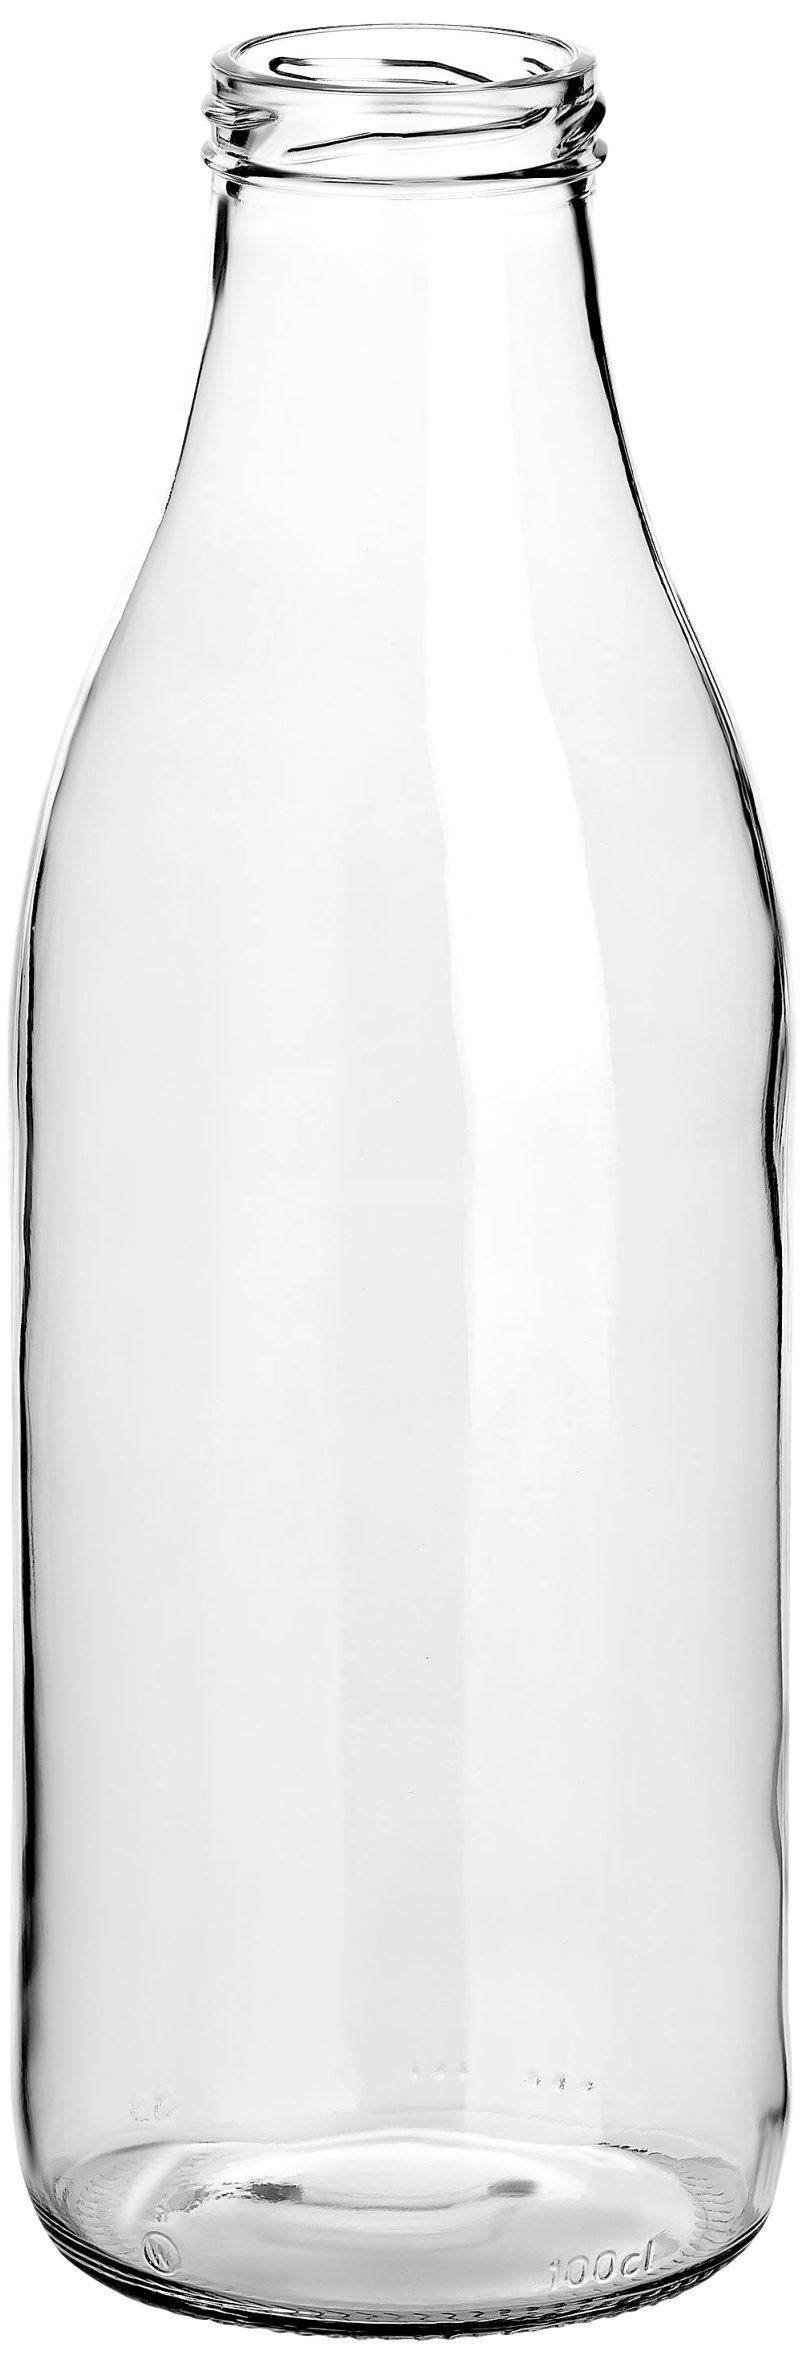 Schraub-Deckel 6er Saftflaschen gouveo - Trinkflasche 1,0 mit Große silberfarben Set, Glas, 1000 ml Flasche l aus